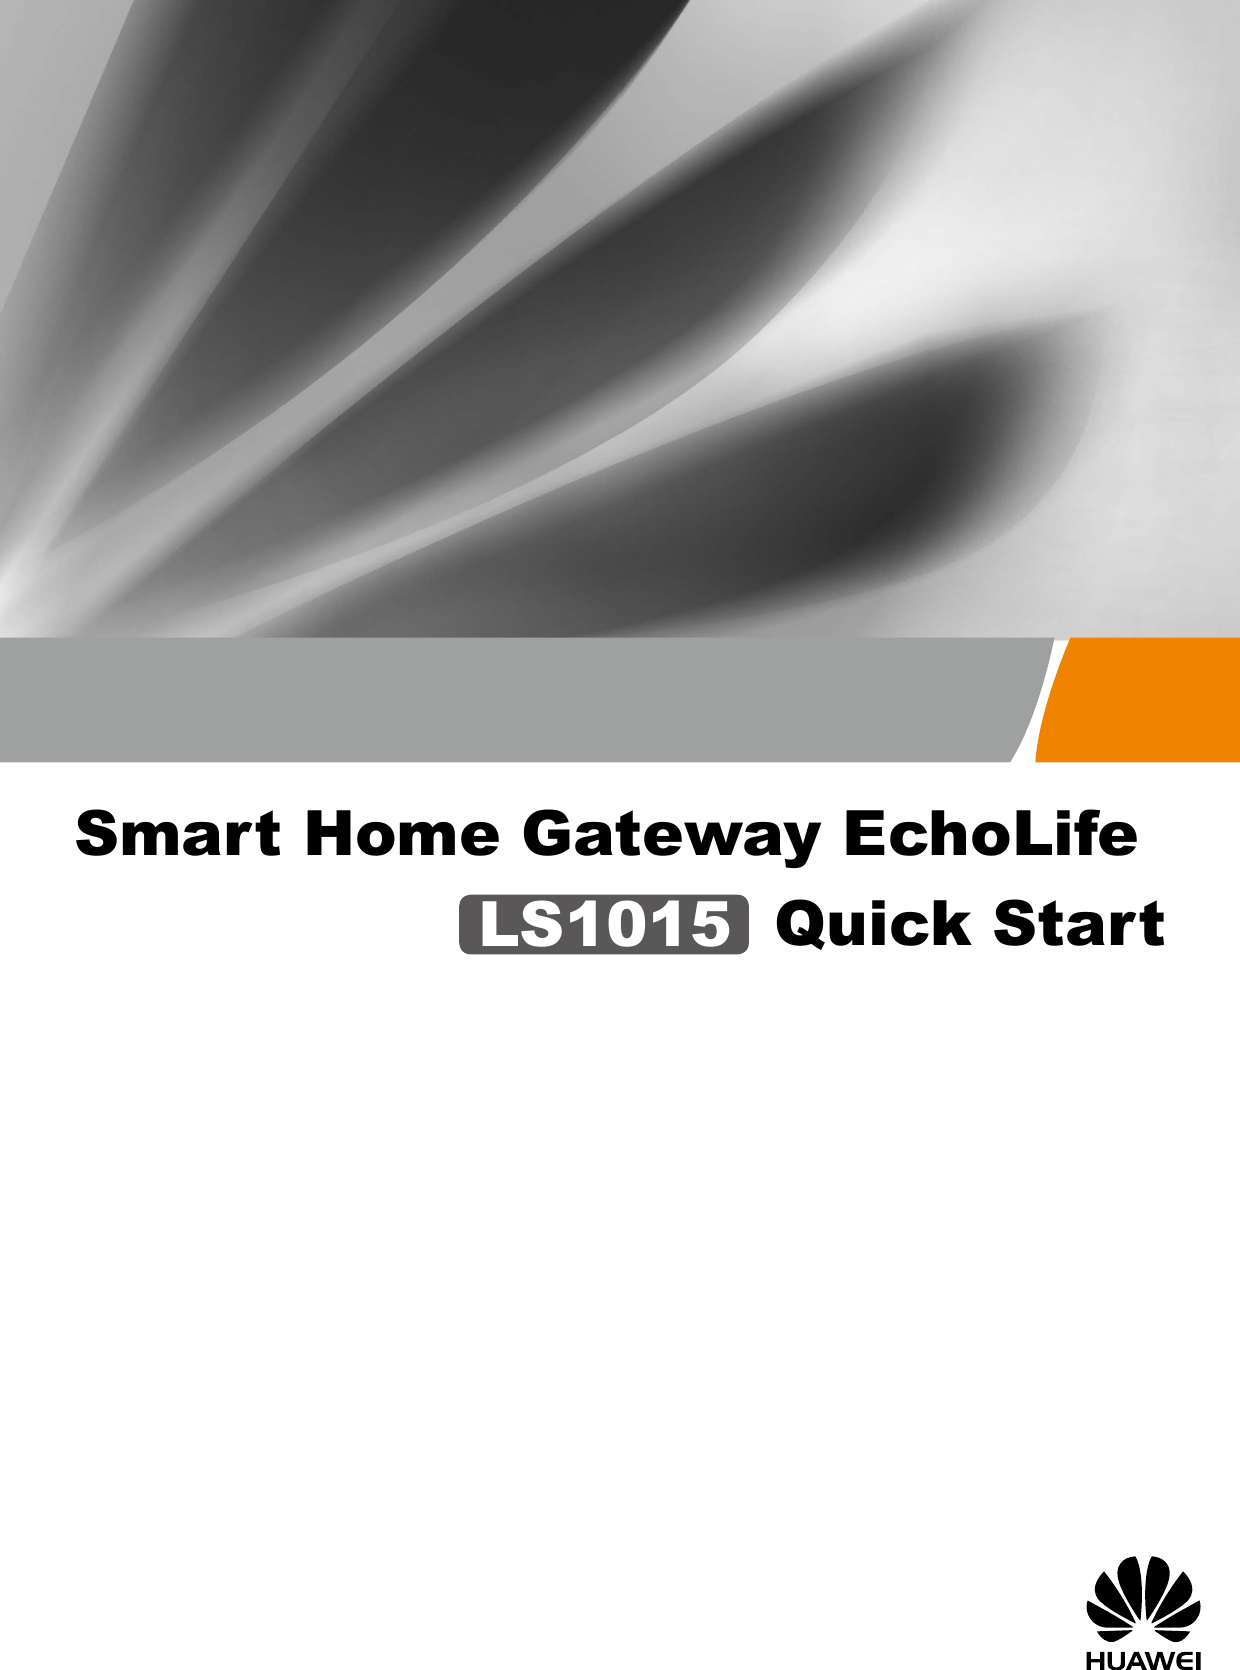 Smart Home Gateway EchoLifeQuick StartLS1015